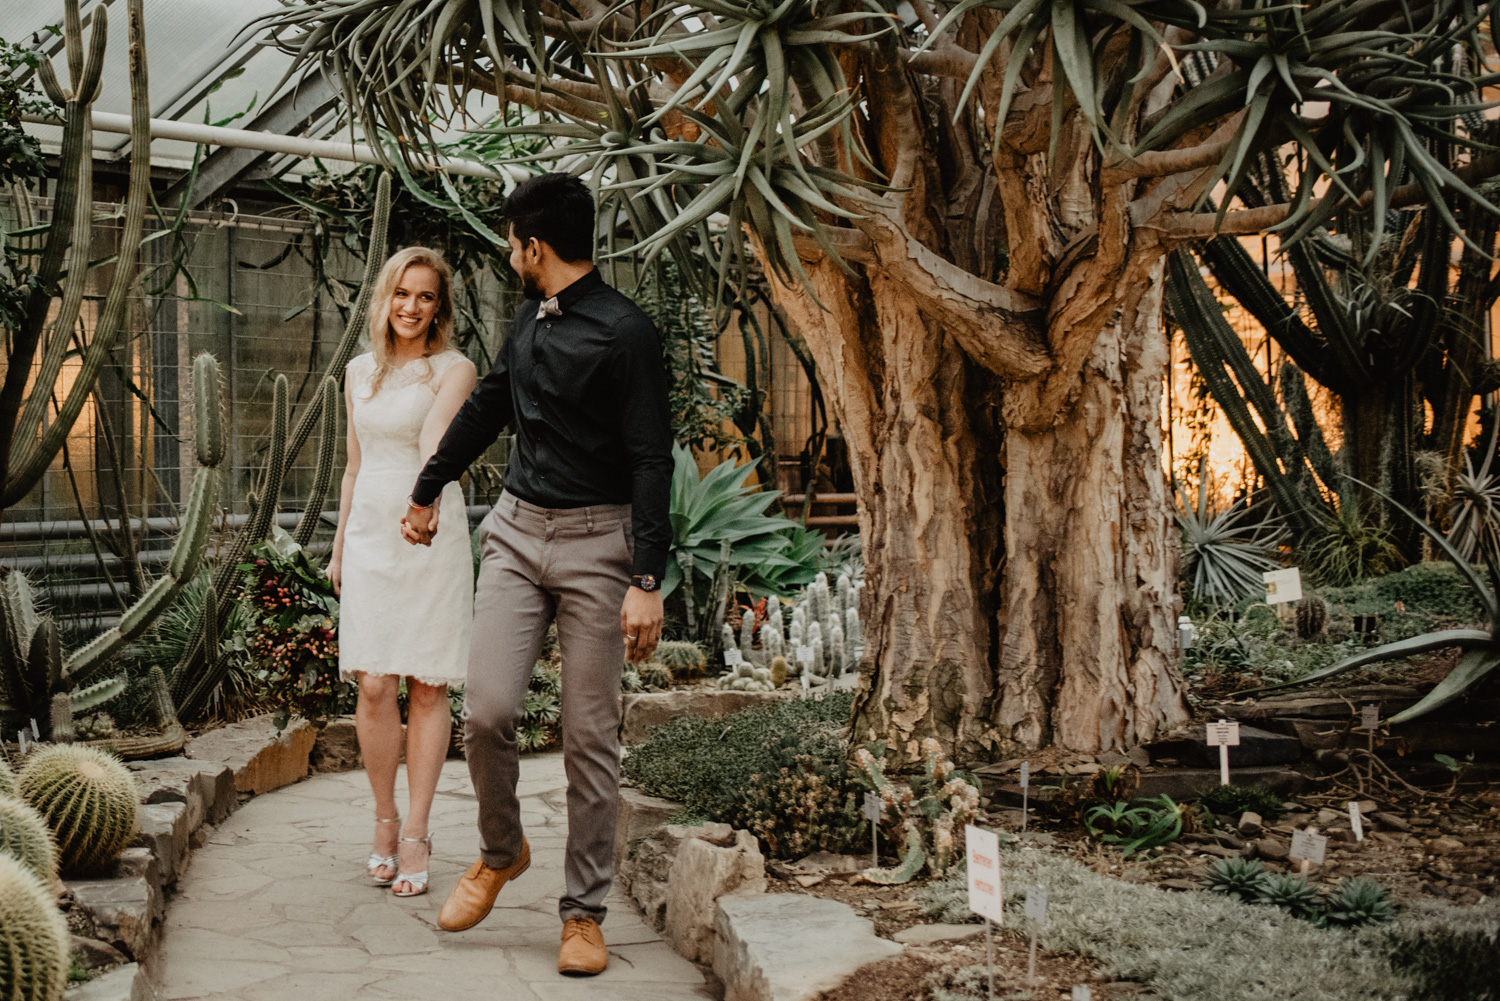 Ein Brautpaar spaziert beim Hochzeits-Fotoshooting umgeben von Wüstenpflanzen.